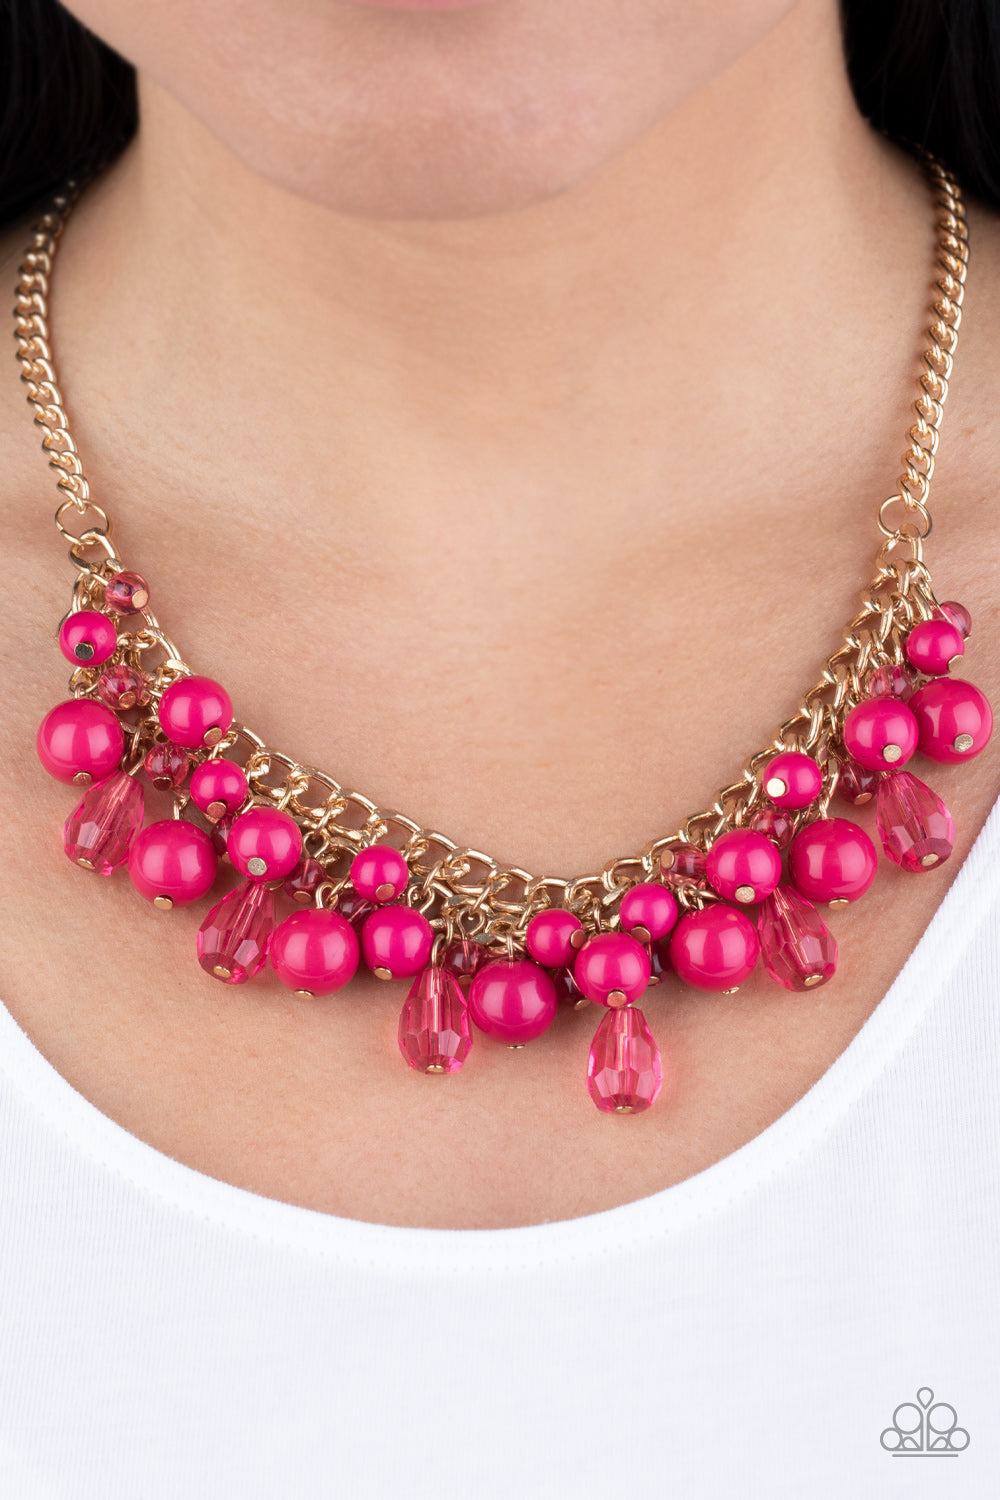 Paparazzi Accessories - Tour de Trendsetter - Pink Necklace - Alies Bling Bar